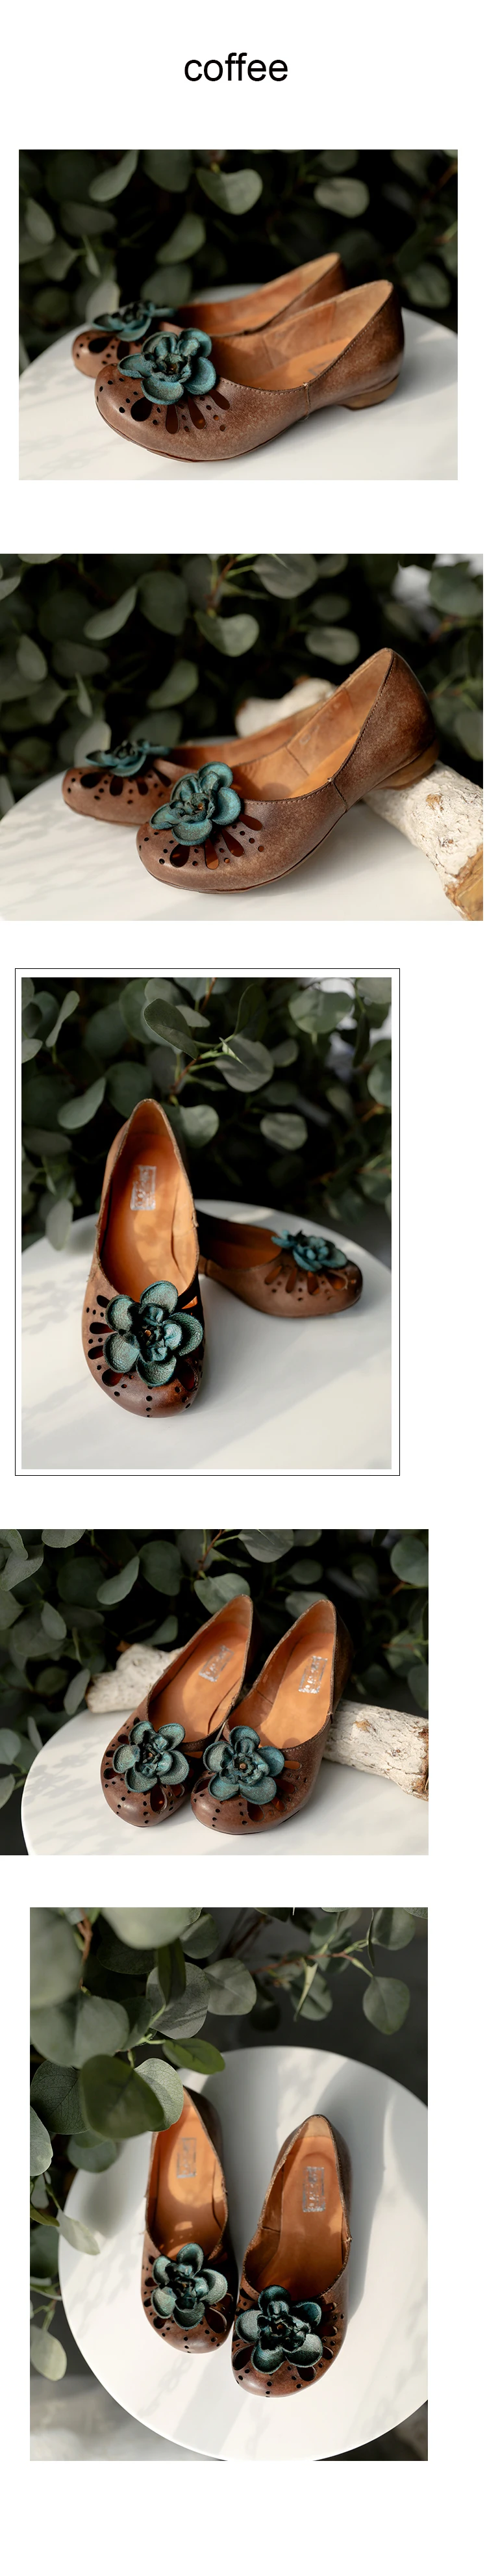 Tayunxing/обувь женская летняя босоножки обувь ручной работы из натуральной кожи, цветы для декора, стильные свободные женские босоножки на низком каблуке, удобная обувь в стиле ретро для отдыха, 022-708